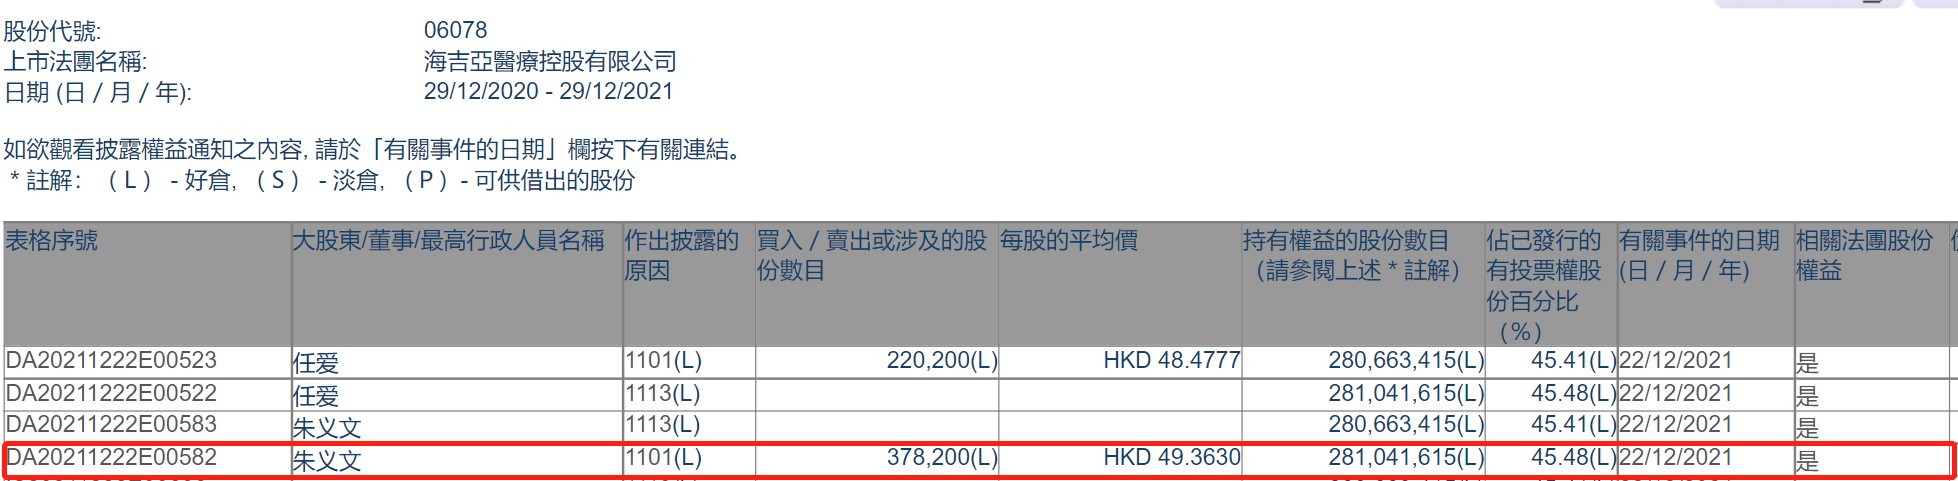 公司主席朱义文增持海吉亚医疗(06078)37.82万股 每股作价约49.36港元